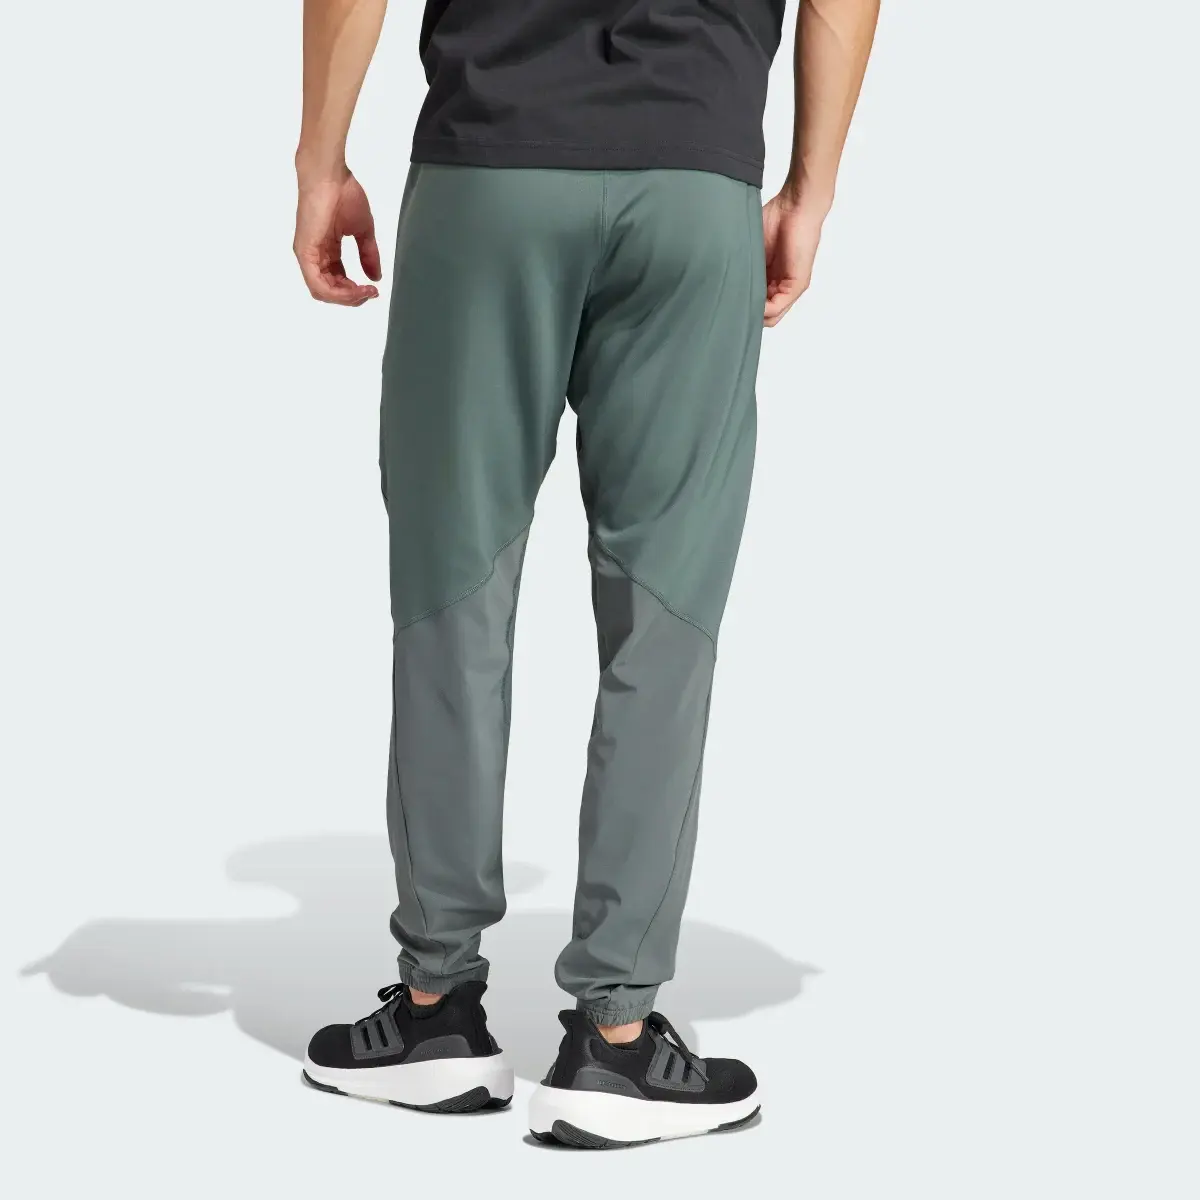 Adidas Pantaloni Designed for Training Workout. 2